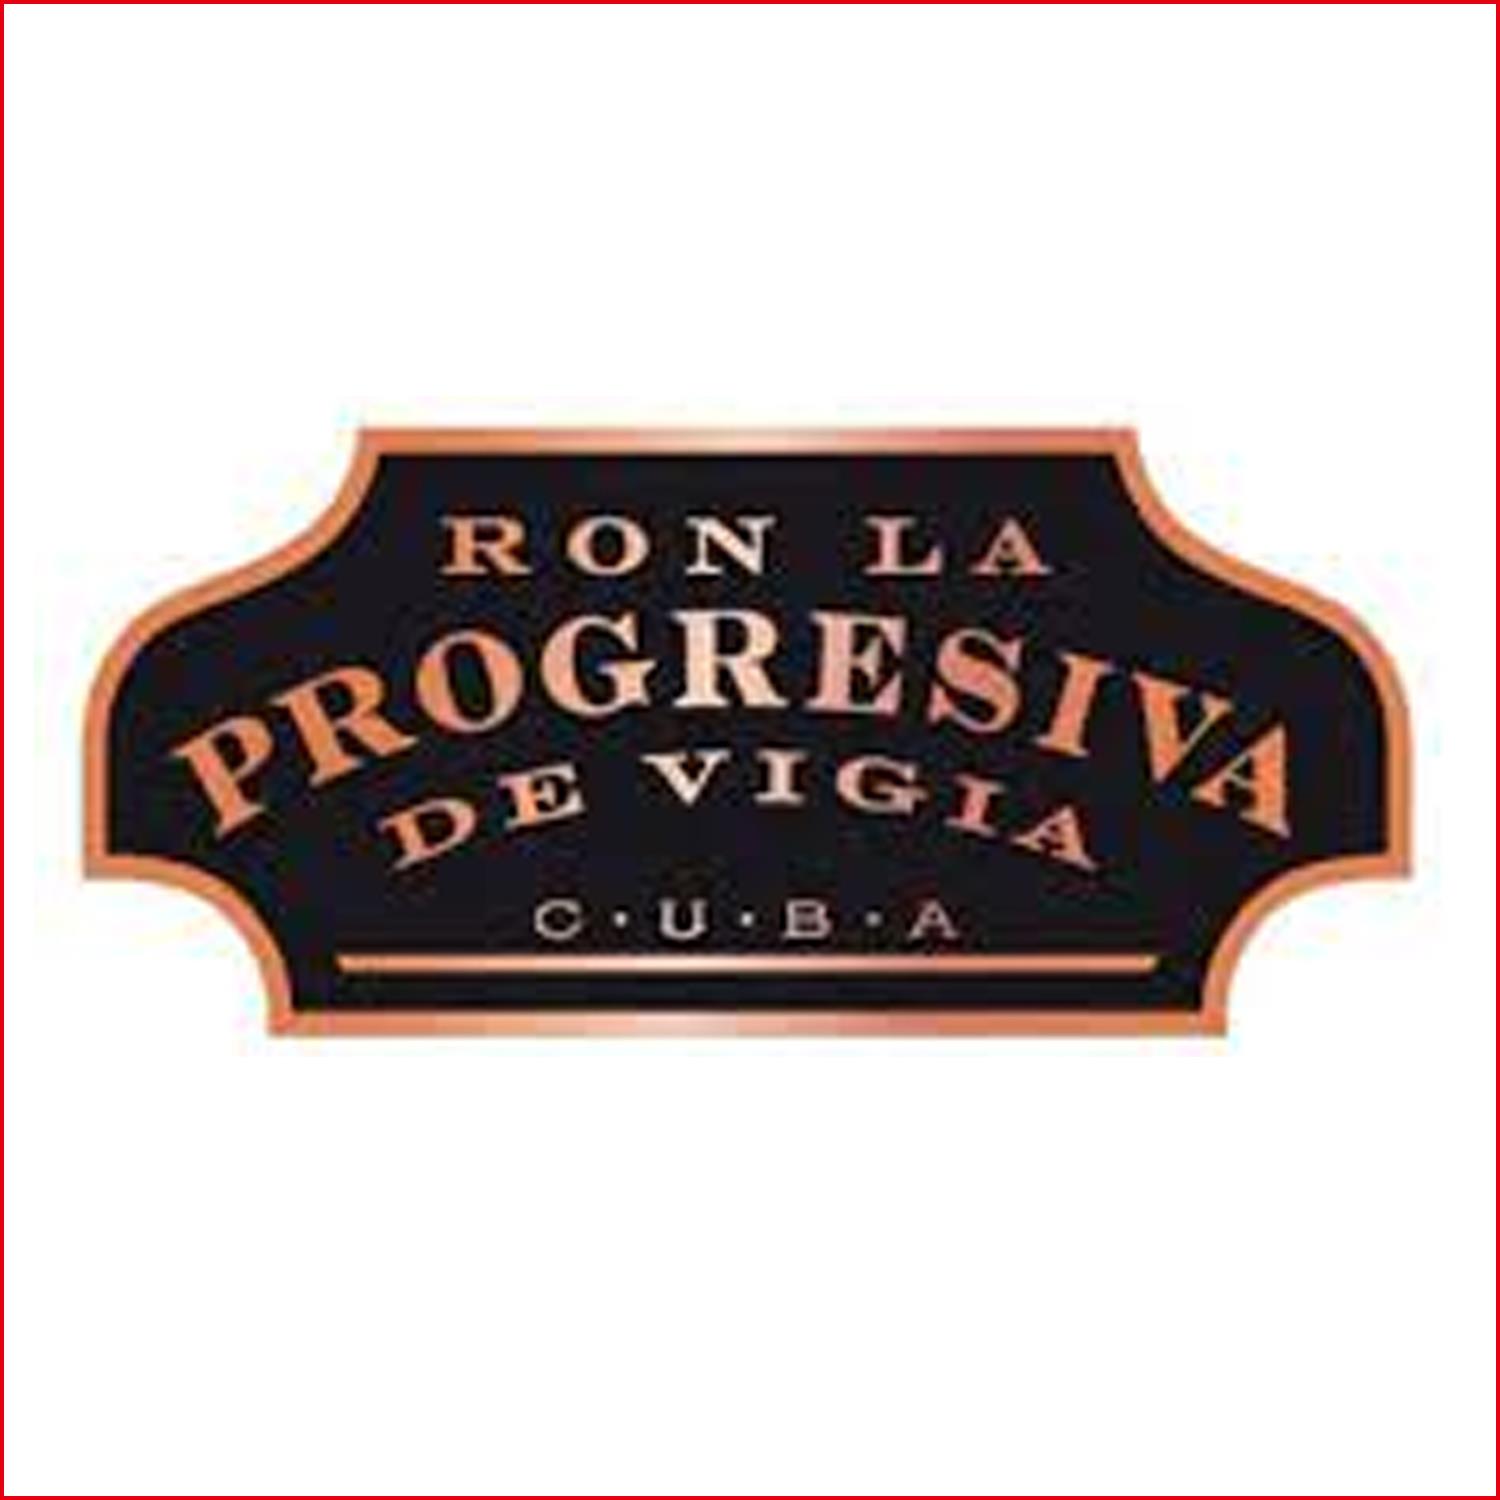 格雷西瓦 Ron La Progresiva